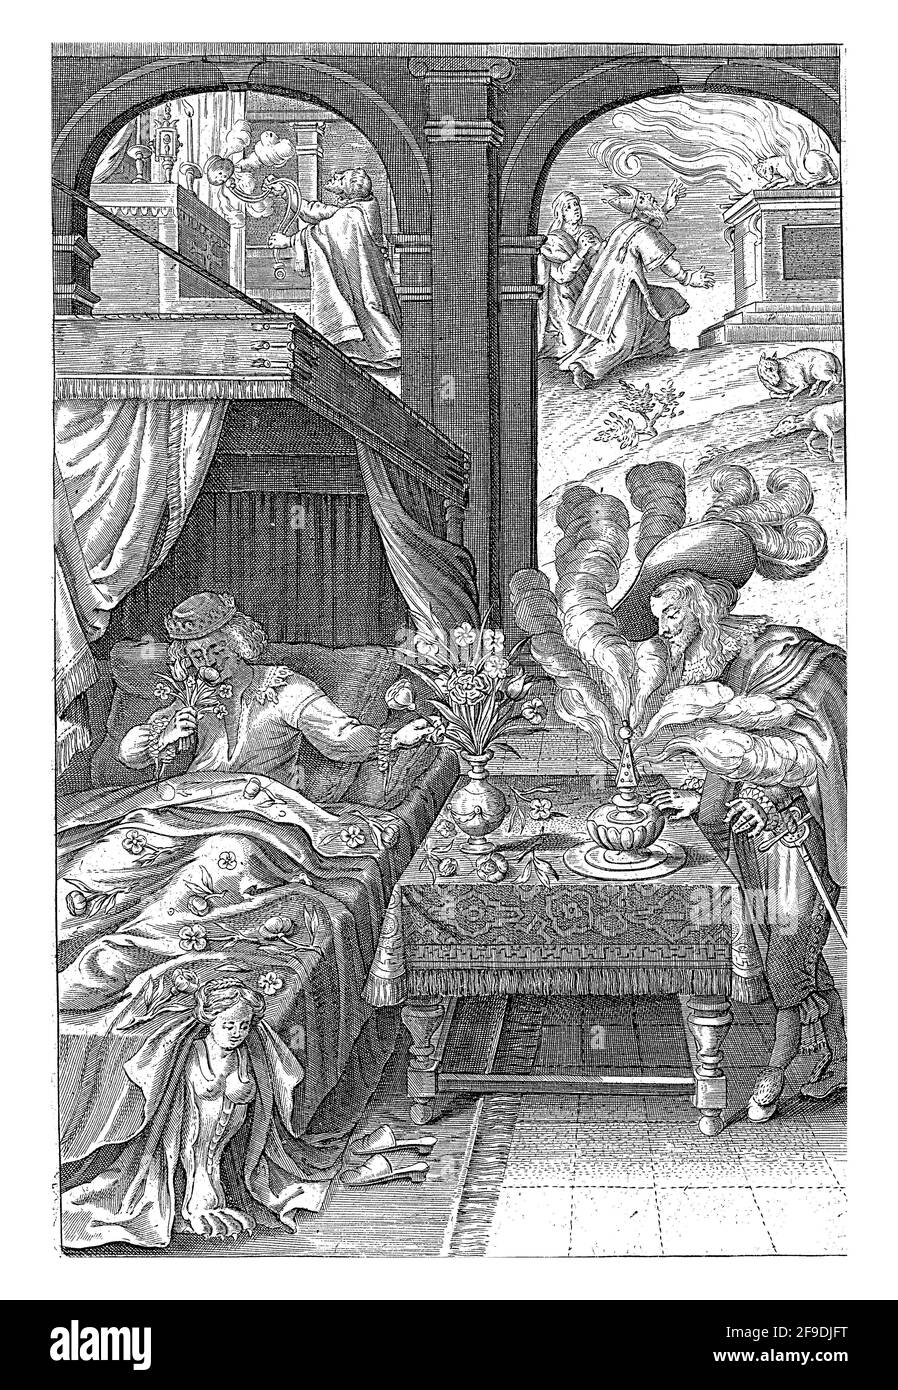 Ein Mann, der im Bett liegt, riecht nach einer Blume, ein anderer, der auf der rechten Seite eines Tisches steht und dessen Hut mit vier großen Federn geschmückt ist, genießt den Dampf Stockfoto